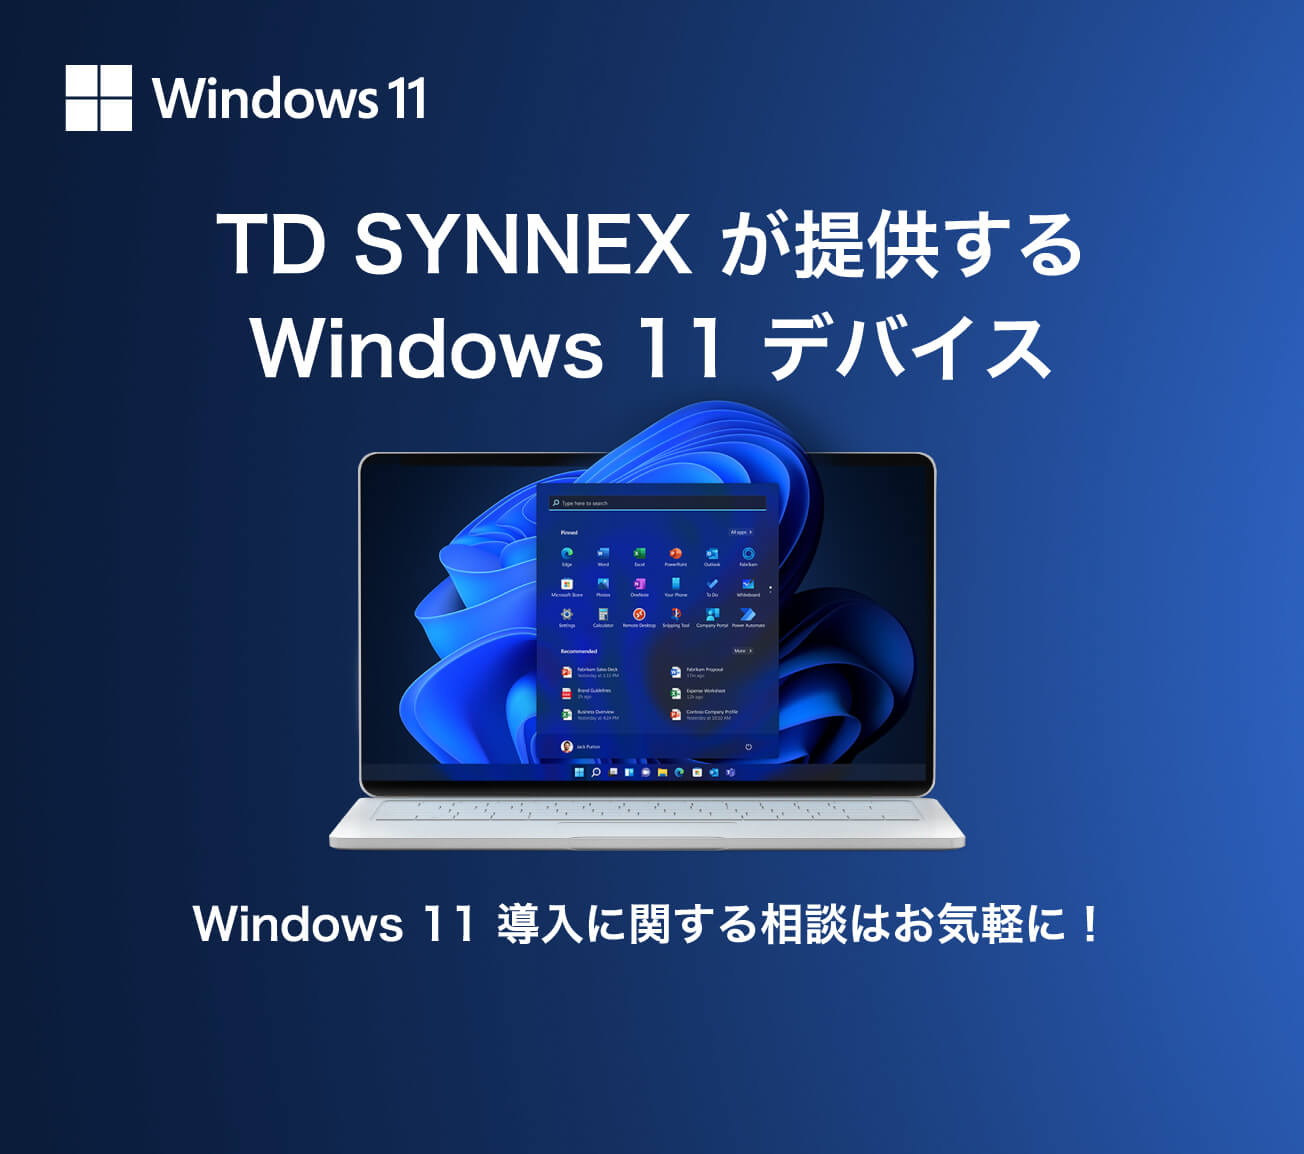 TD SYNNEX が提供するWindows 11 デバイスWindows 11 導入に関する相談はお気軽に！